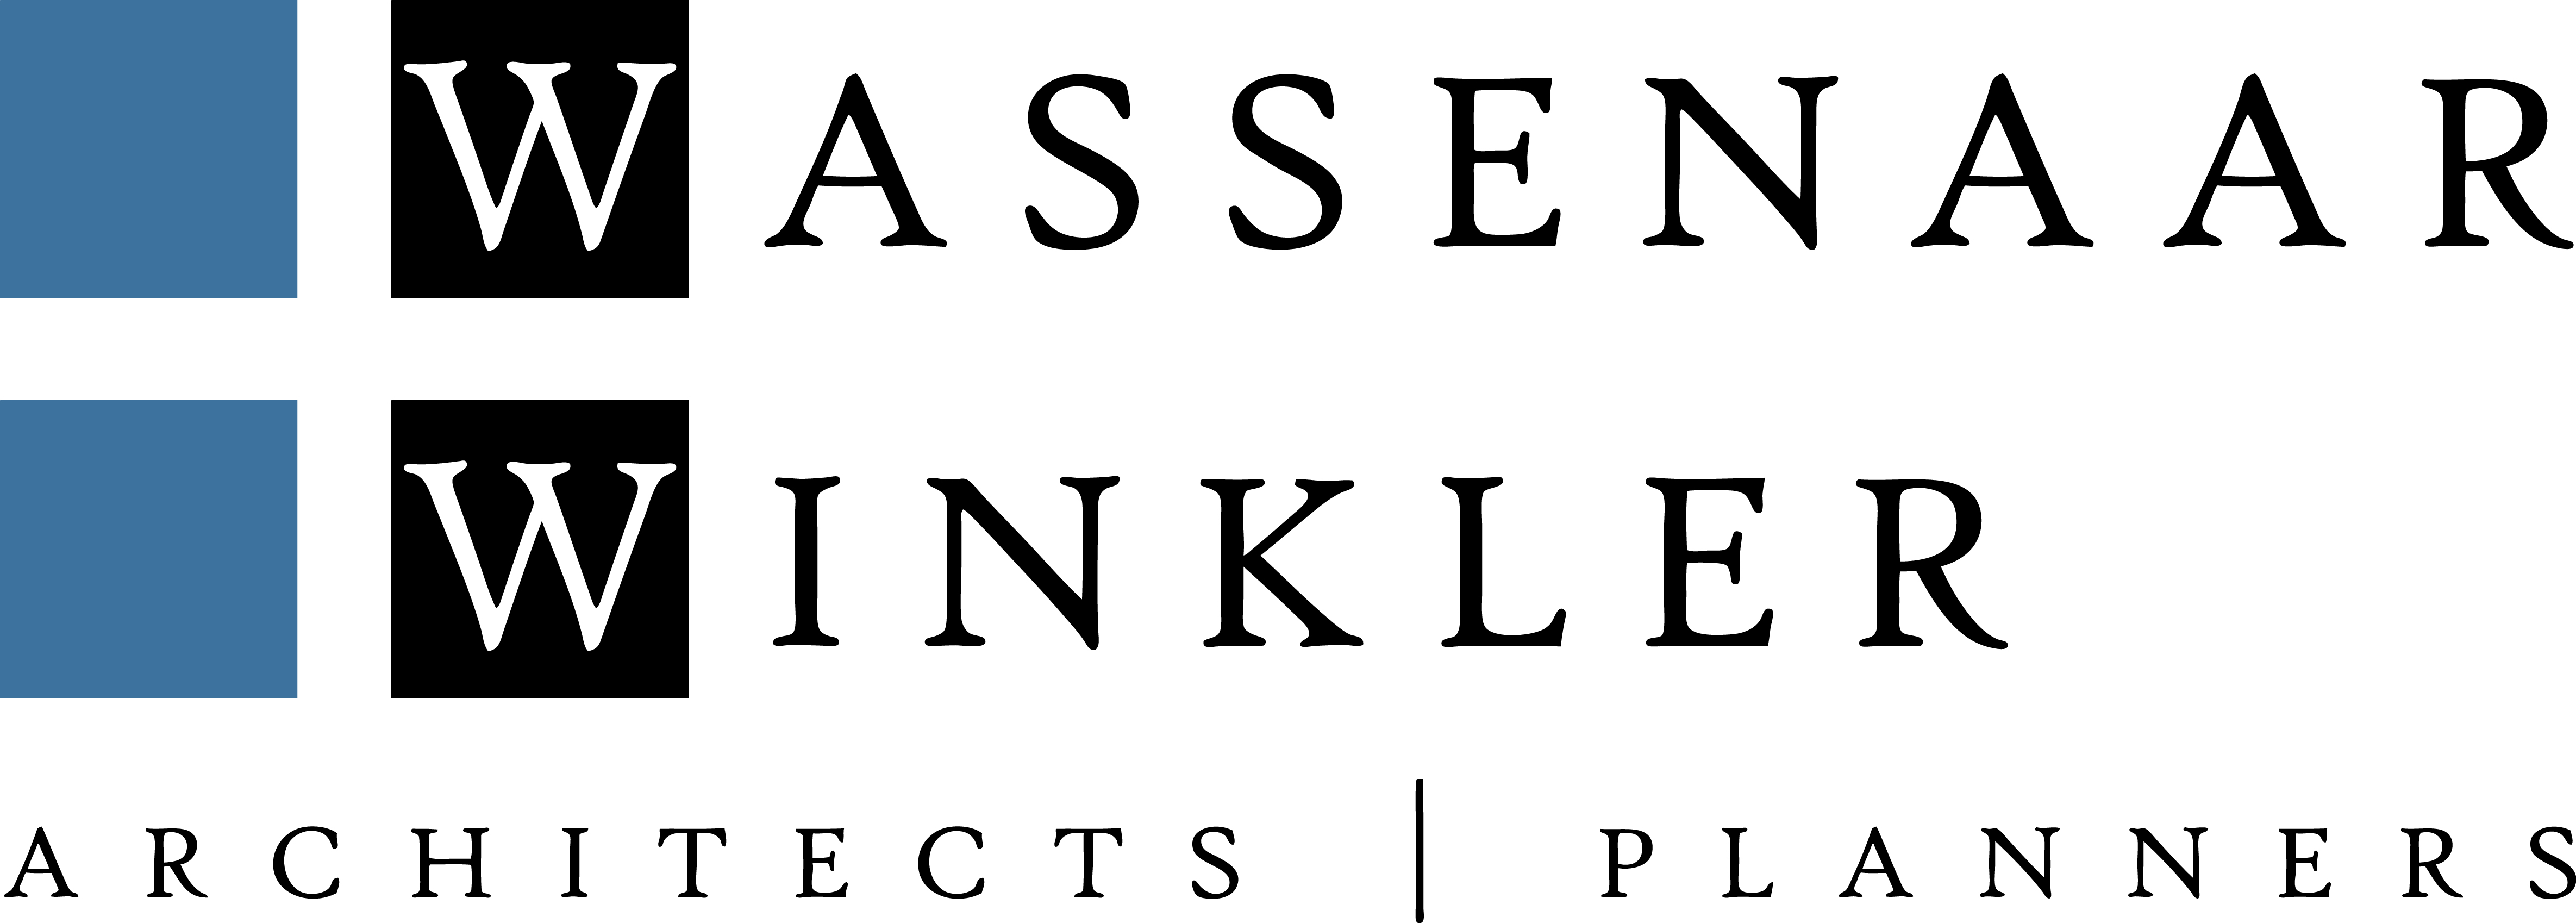 Wassenaar + Winkler logo